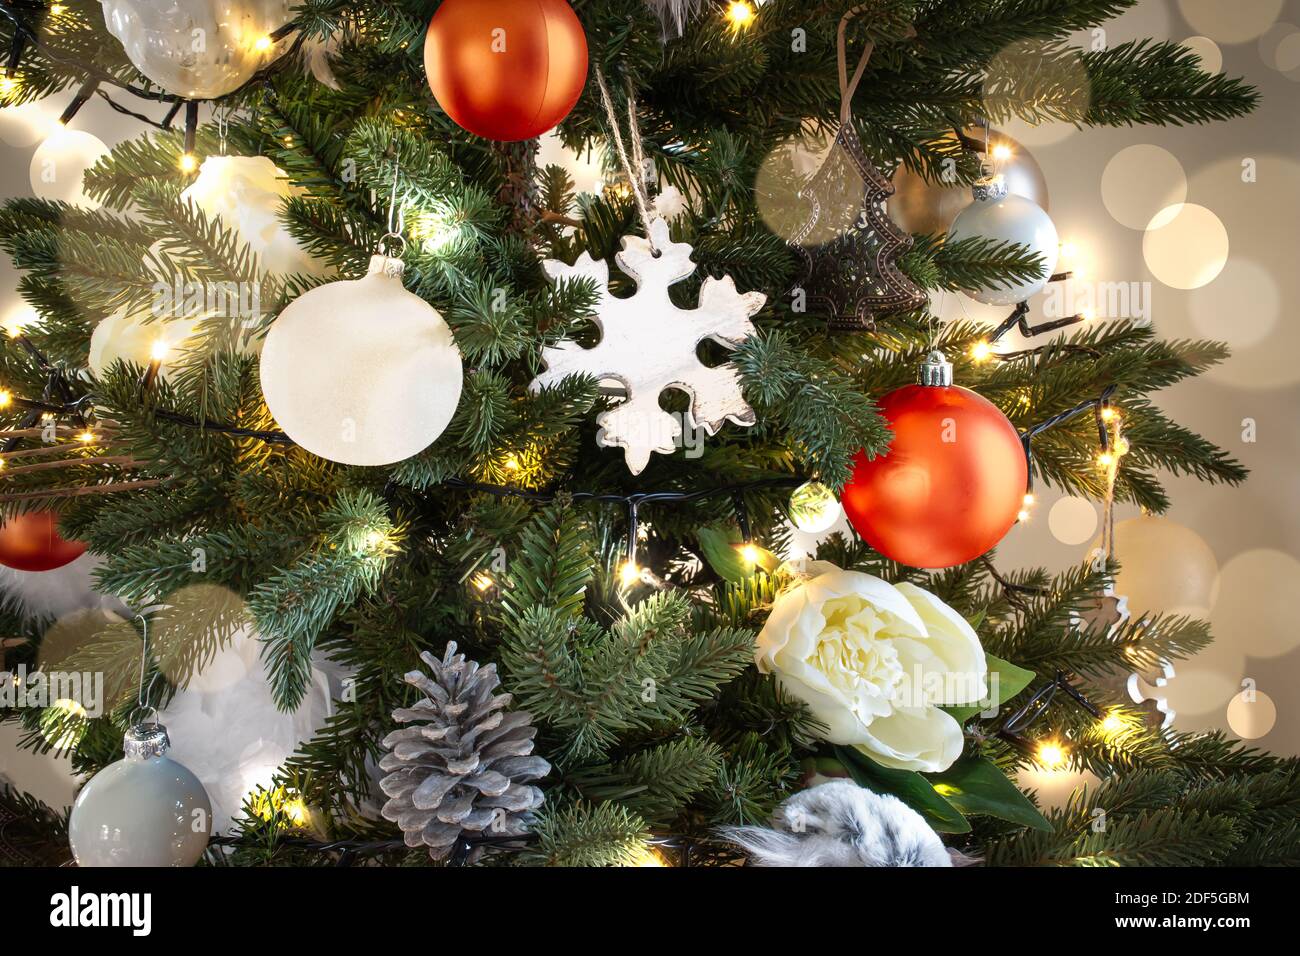 Árbol de Navidad iluminado con decoraciones navideñas blancas y naranjas y llamaradas. Foto de stock